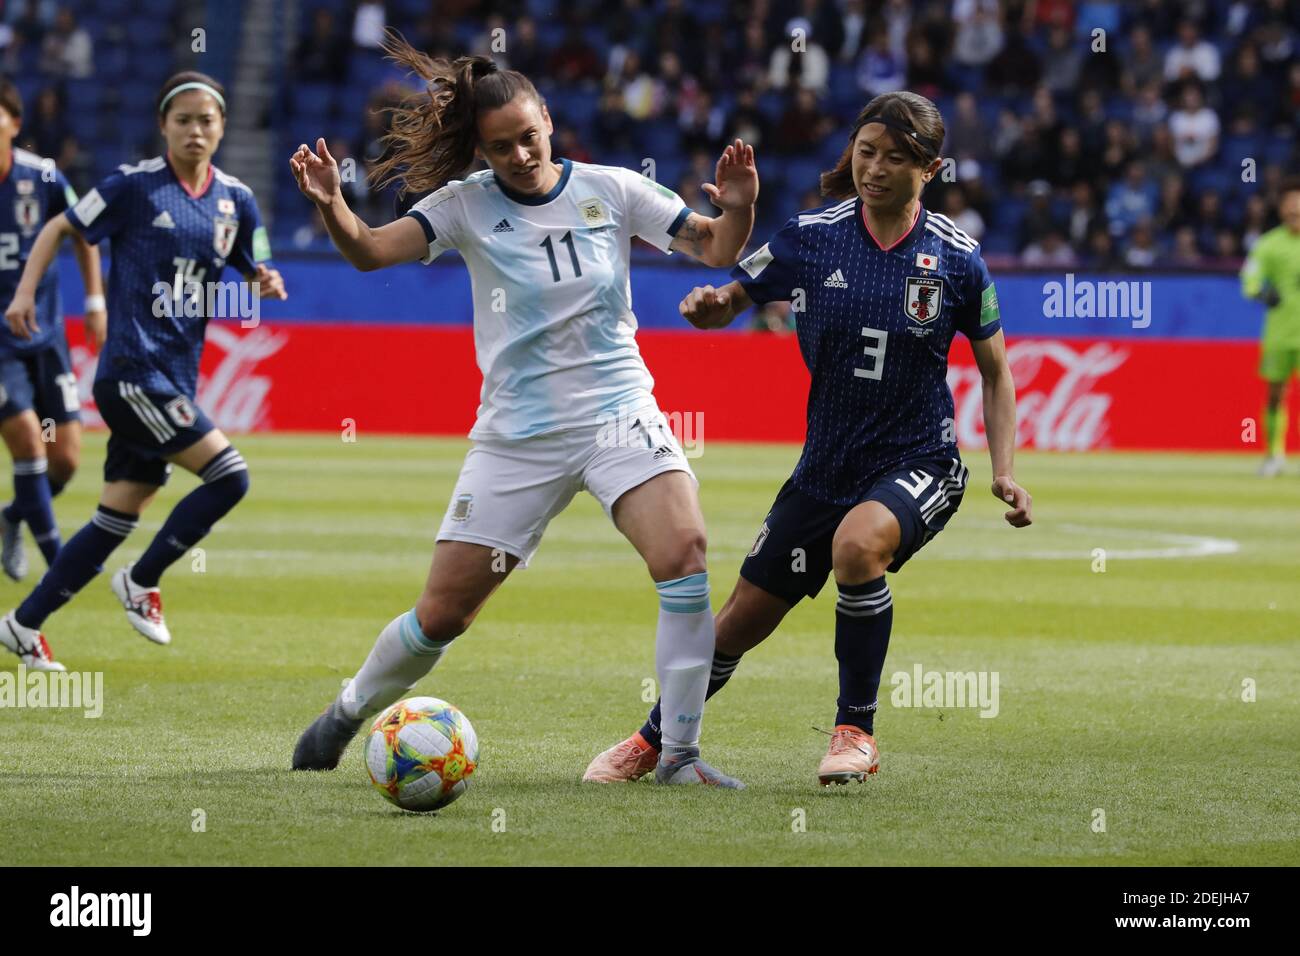 La japonesa Aya Sameshima lucha contra la Argentina Florencia Bonsegundo durante Copa Mundial de Fútbol Femenino Japón Argentina en Parc des Princes, París, Francia el 10 de junio de